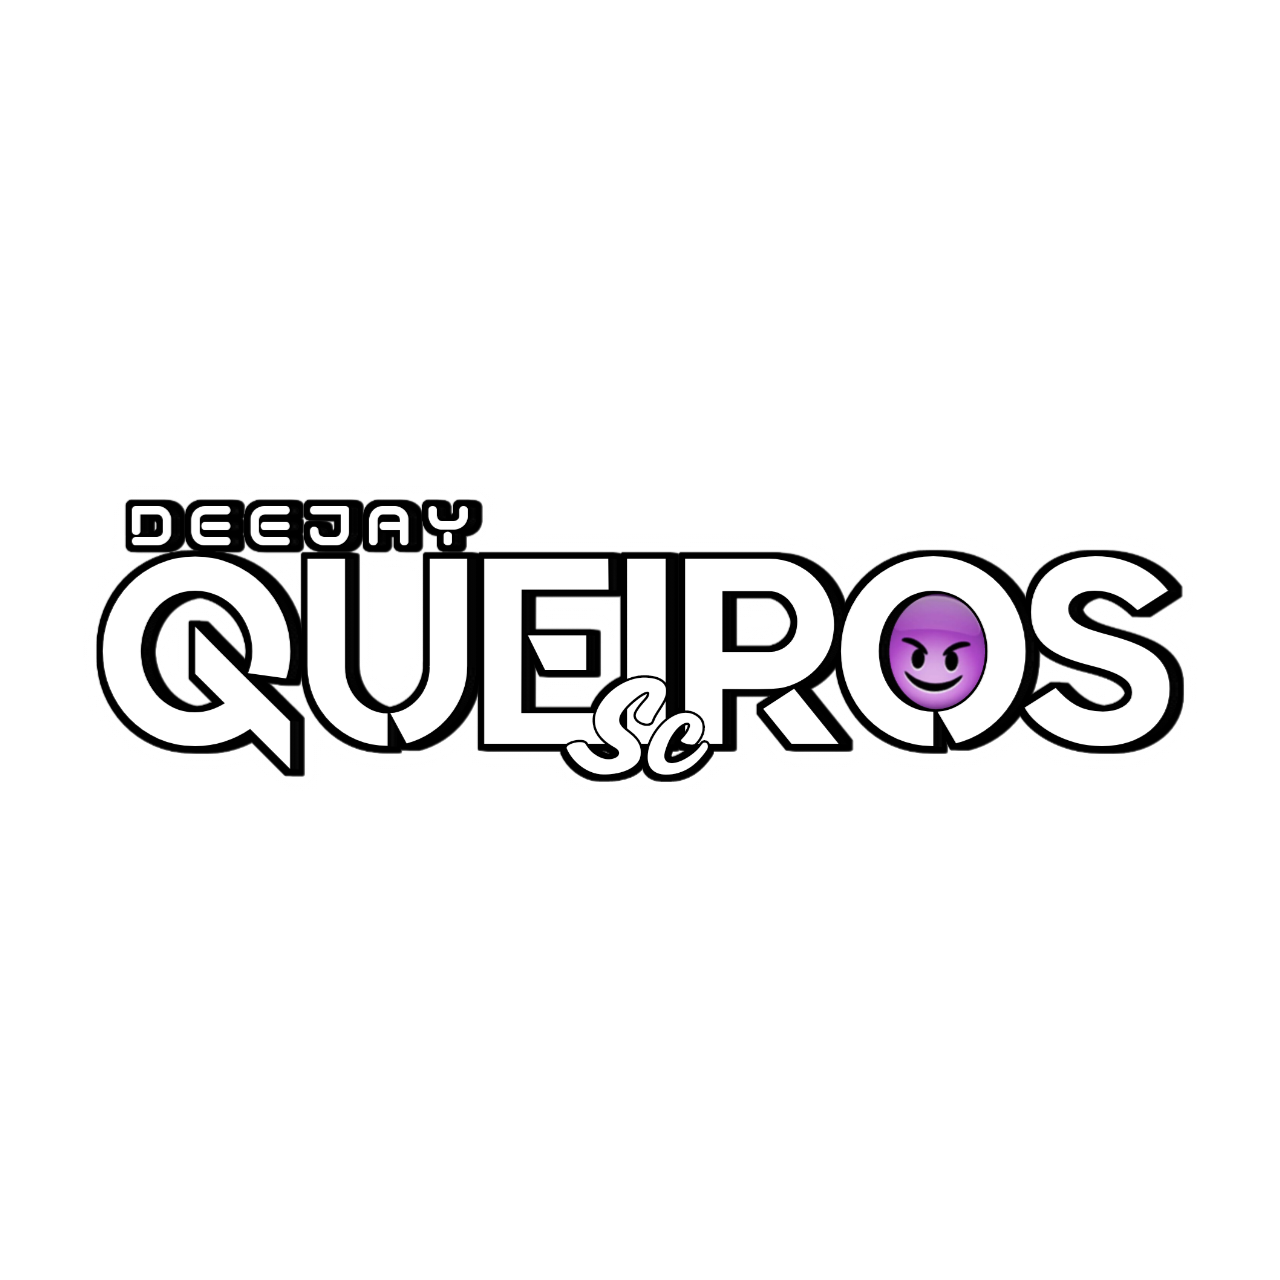 DJ QUEIROS SC